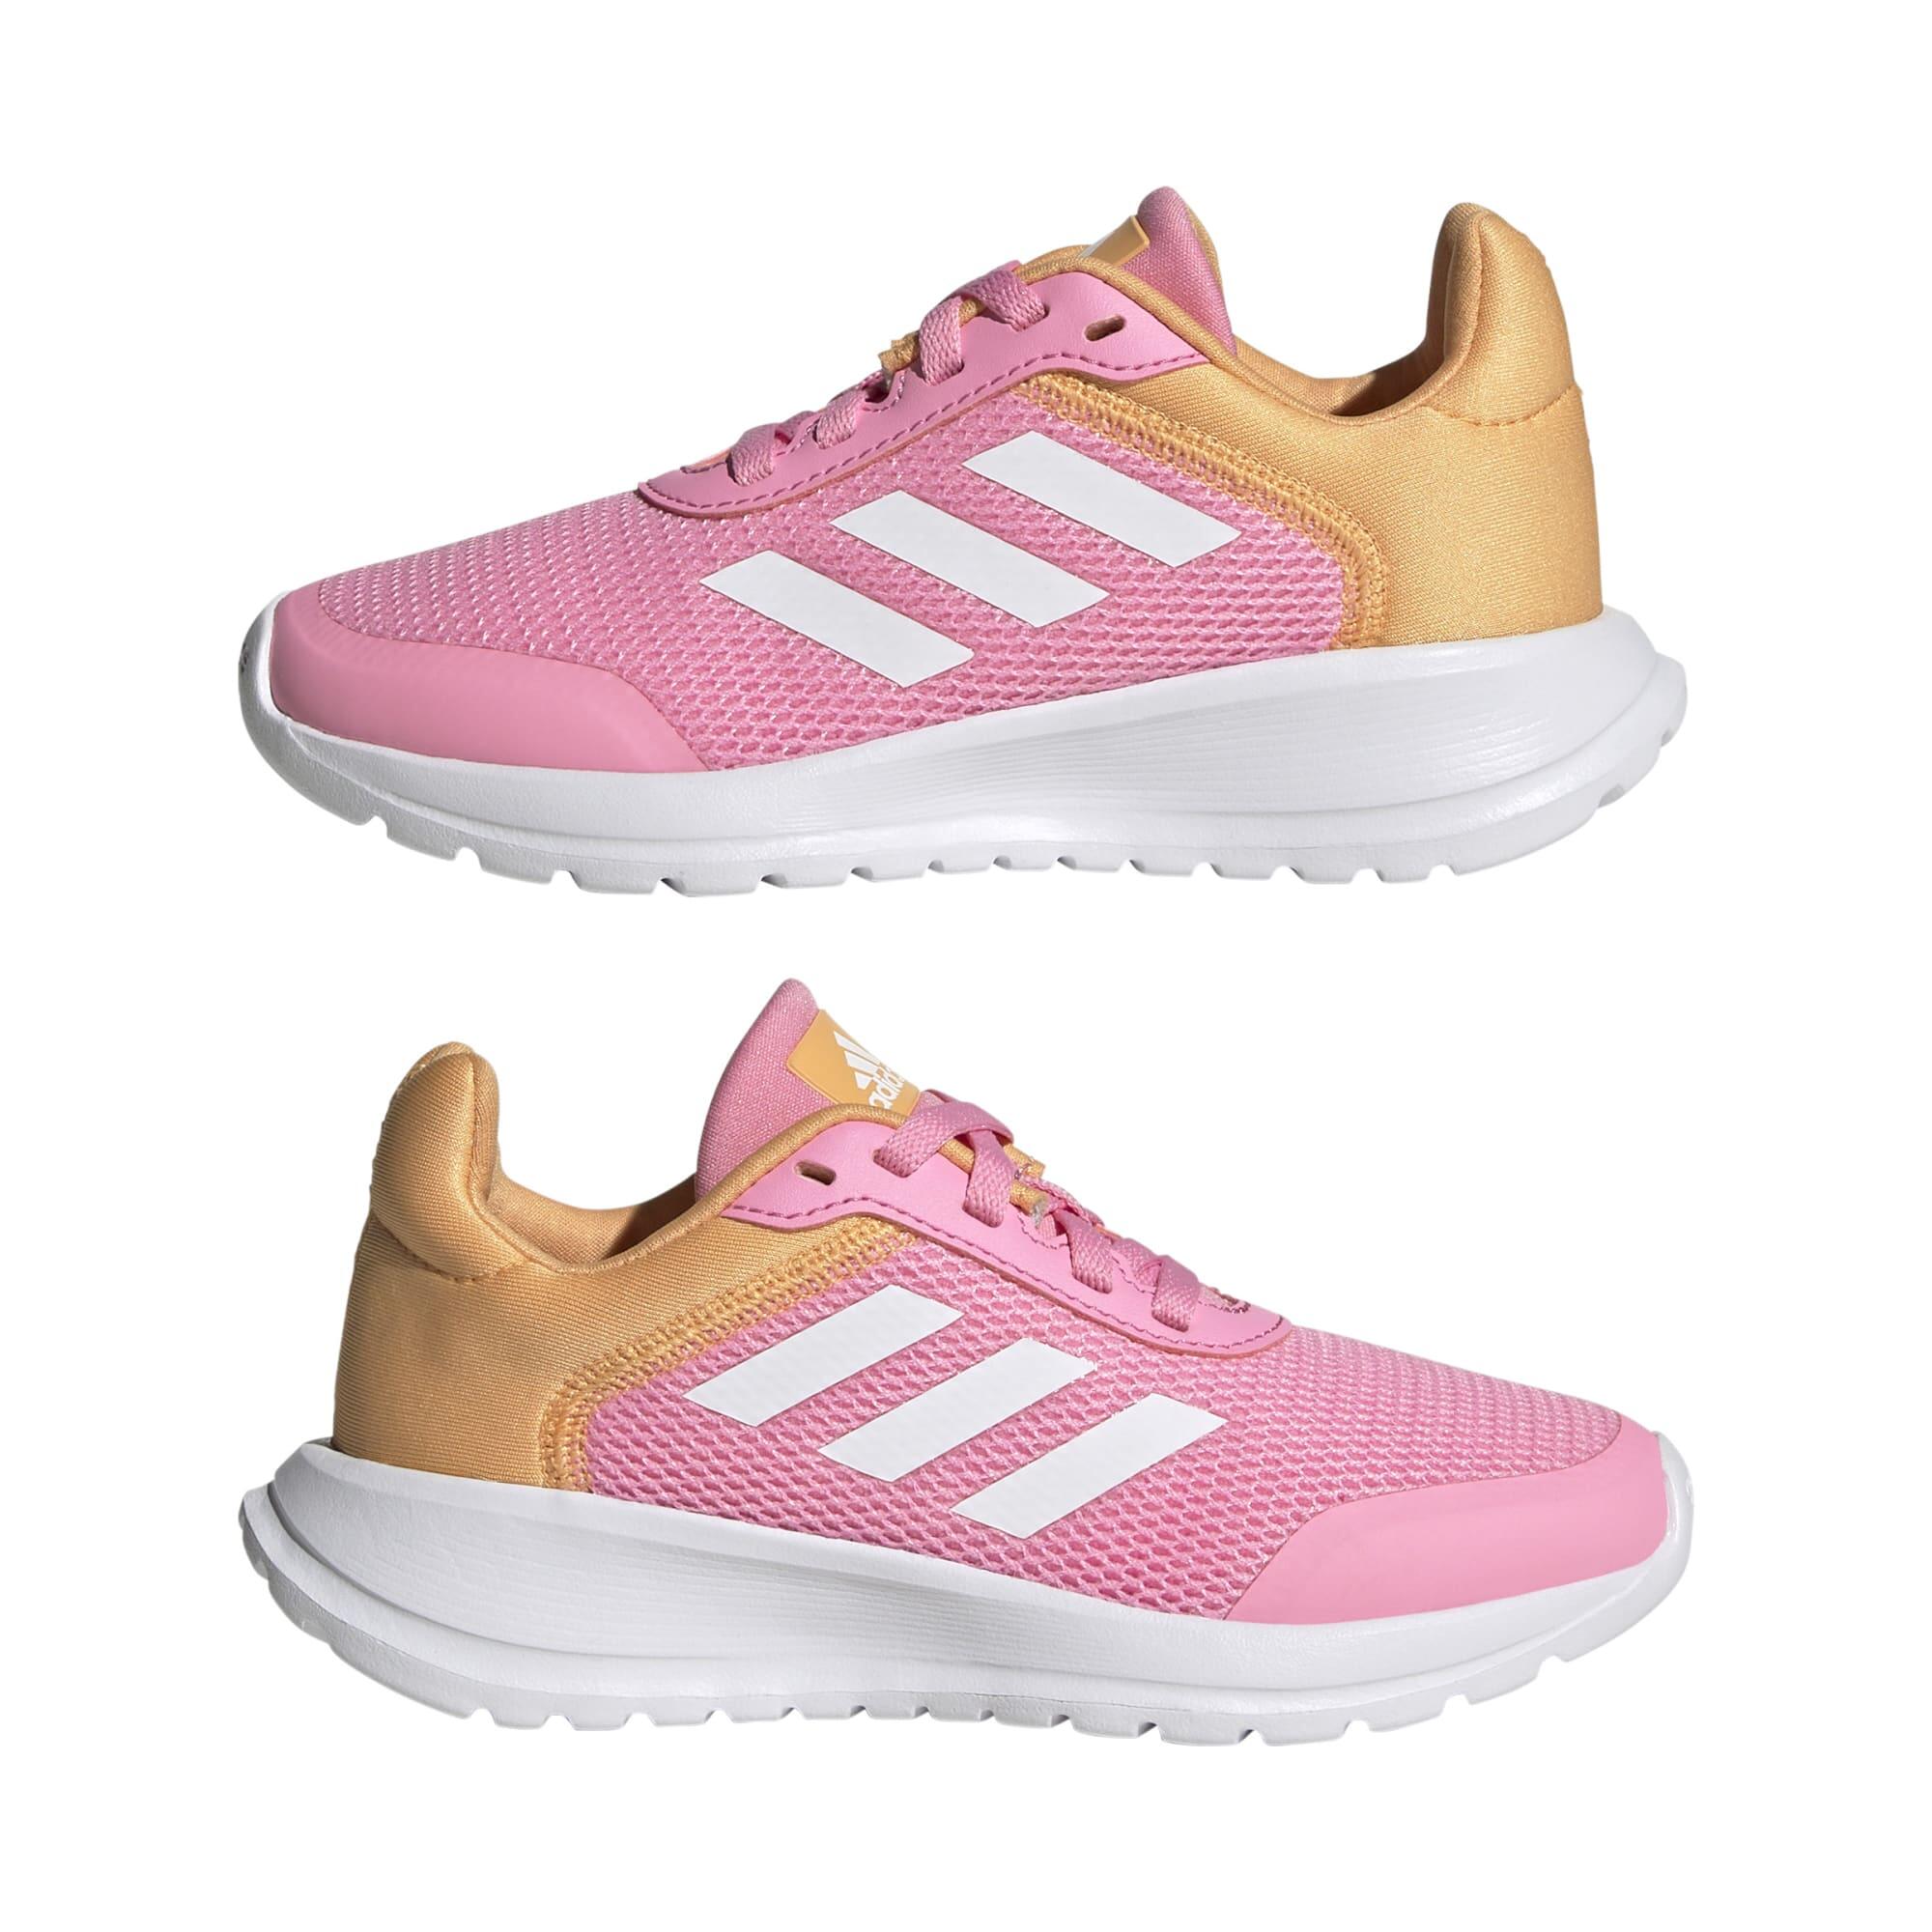 Kids' Shoes Tensaur Run - Pink / White / Orange 6/6